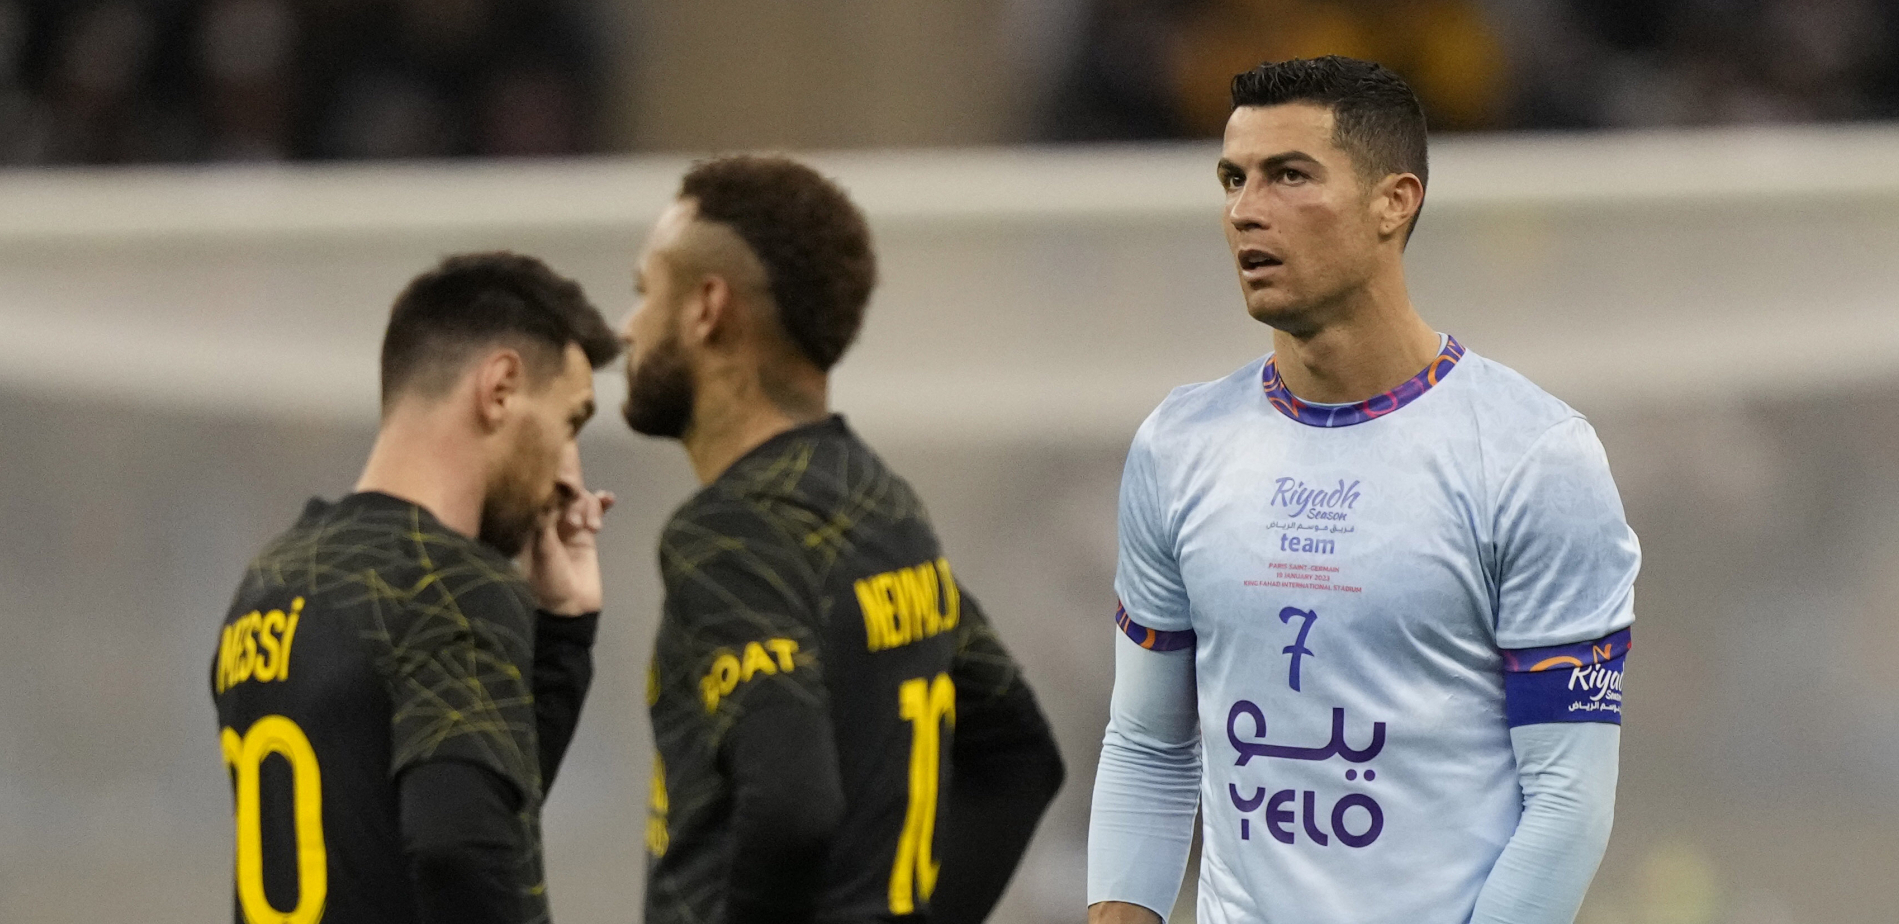 UŽAS Navijači skandirali "Mesi, Mesi", Ronaldo pobesneo i uzvratio im prostačkim gestom (VIDEO)